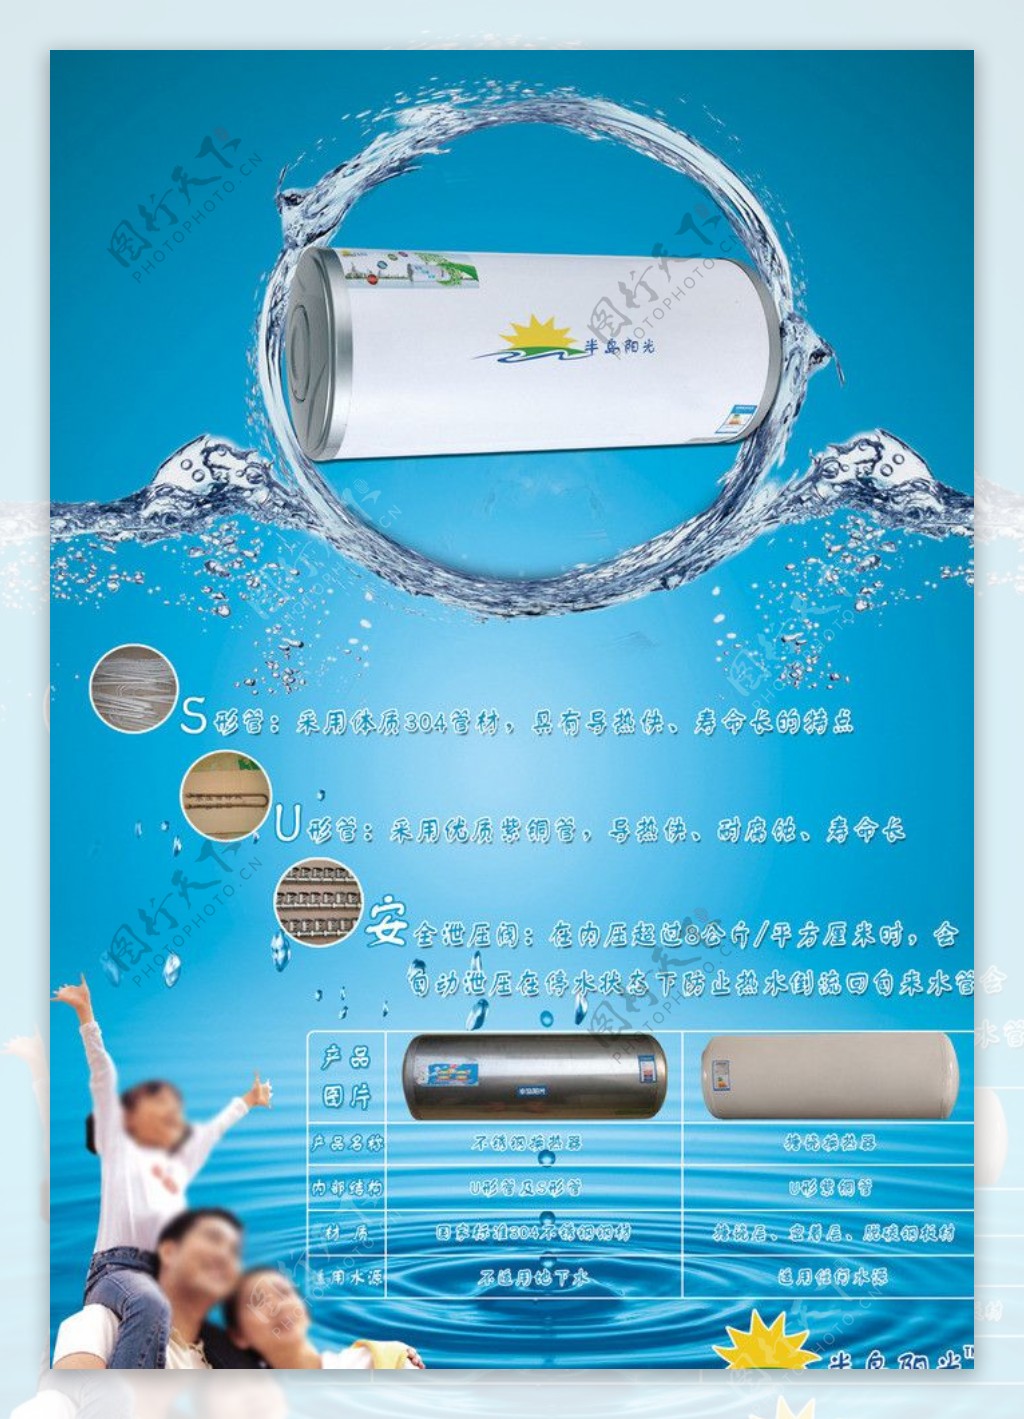 热水器广告图片